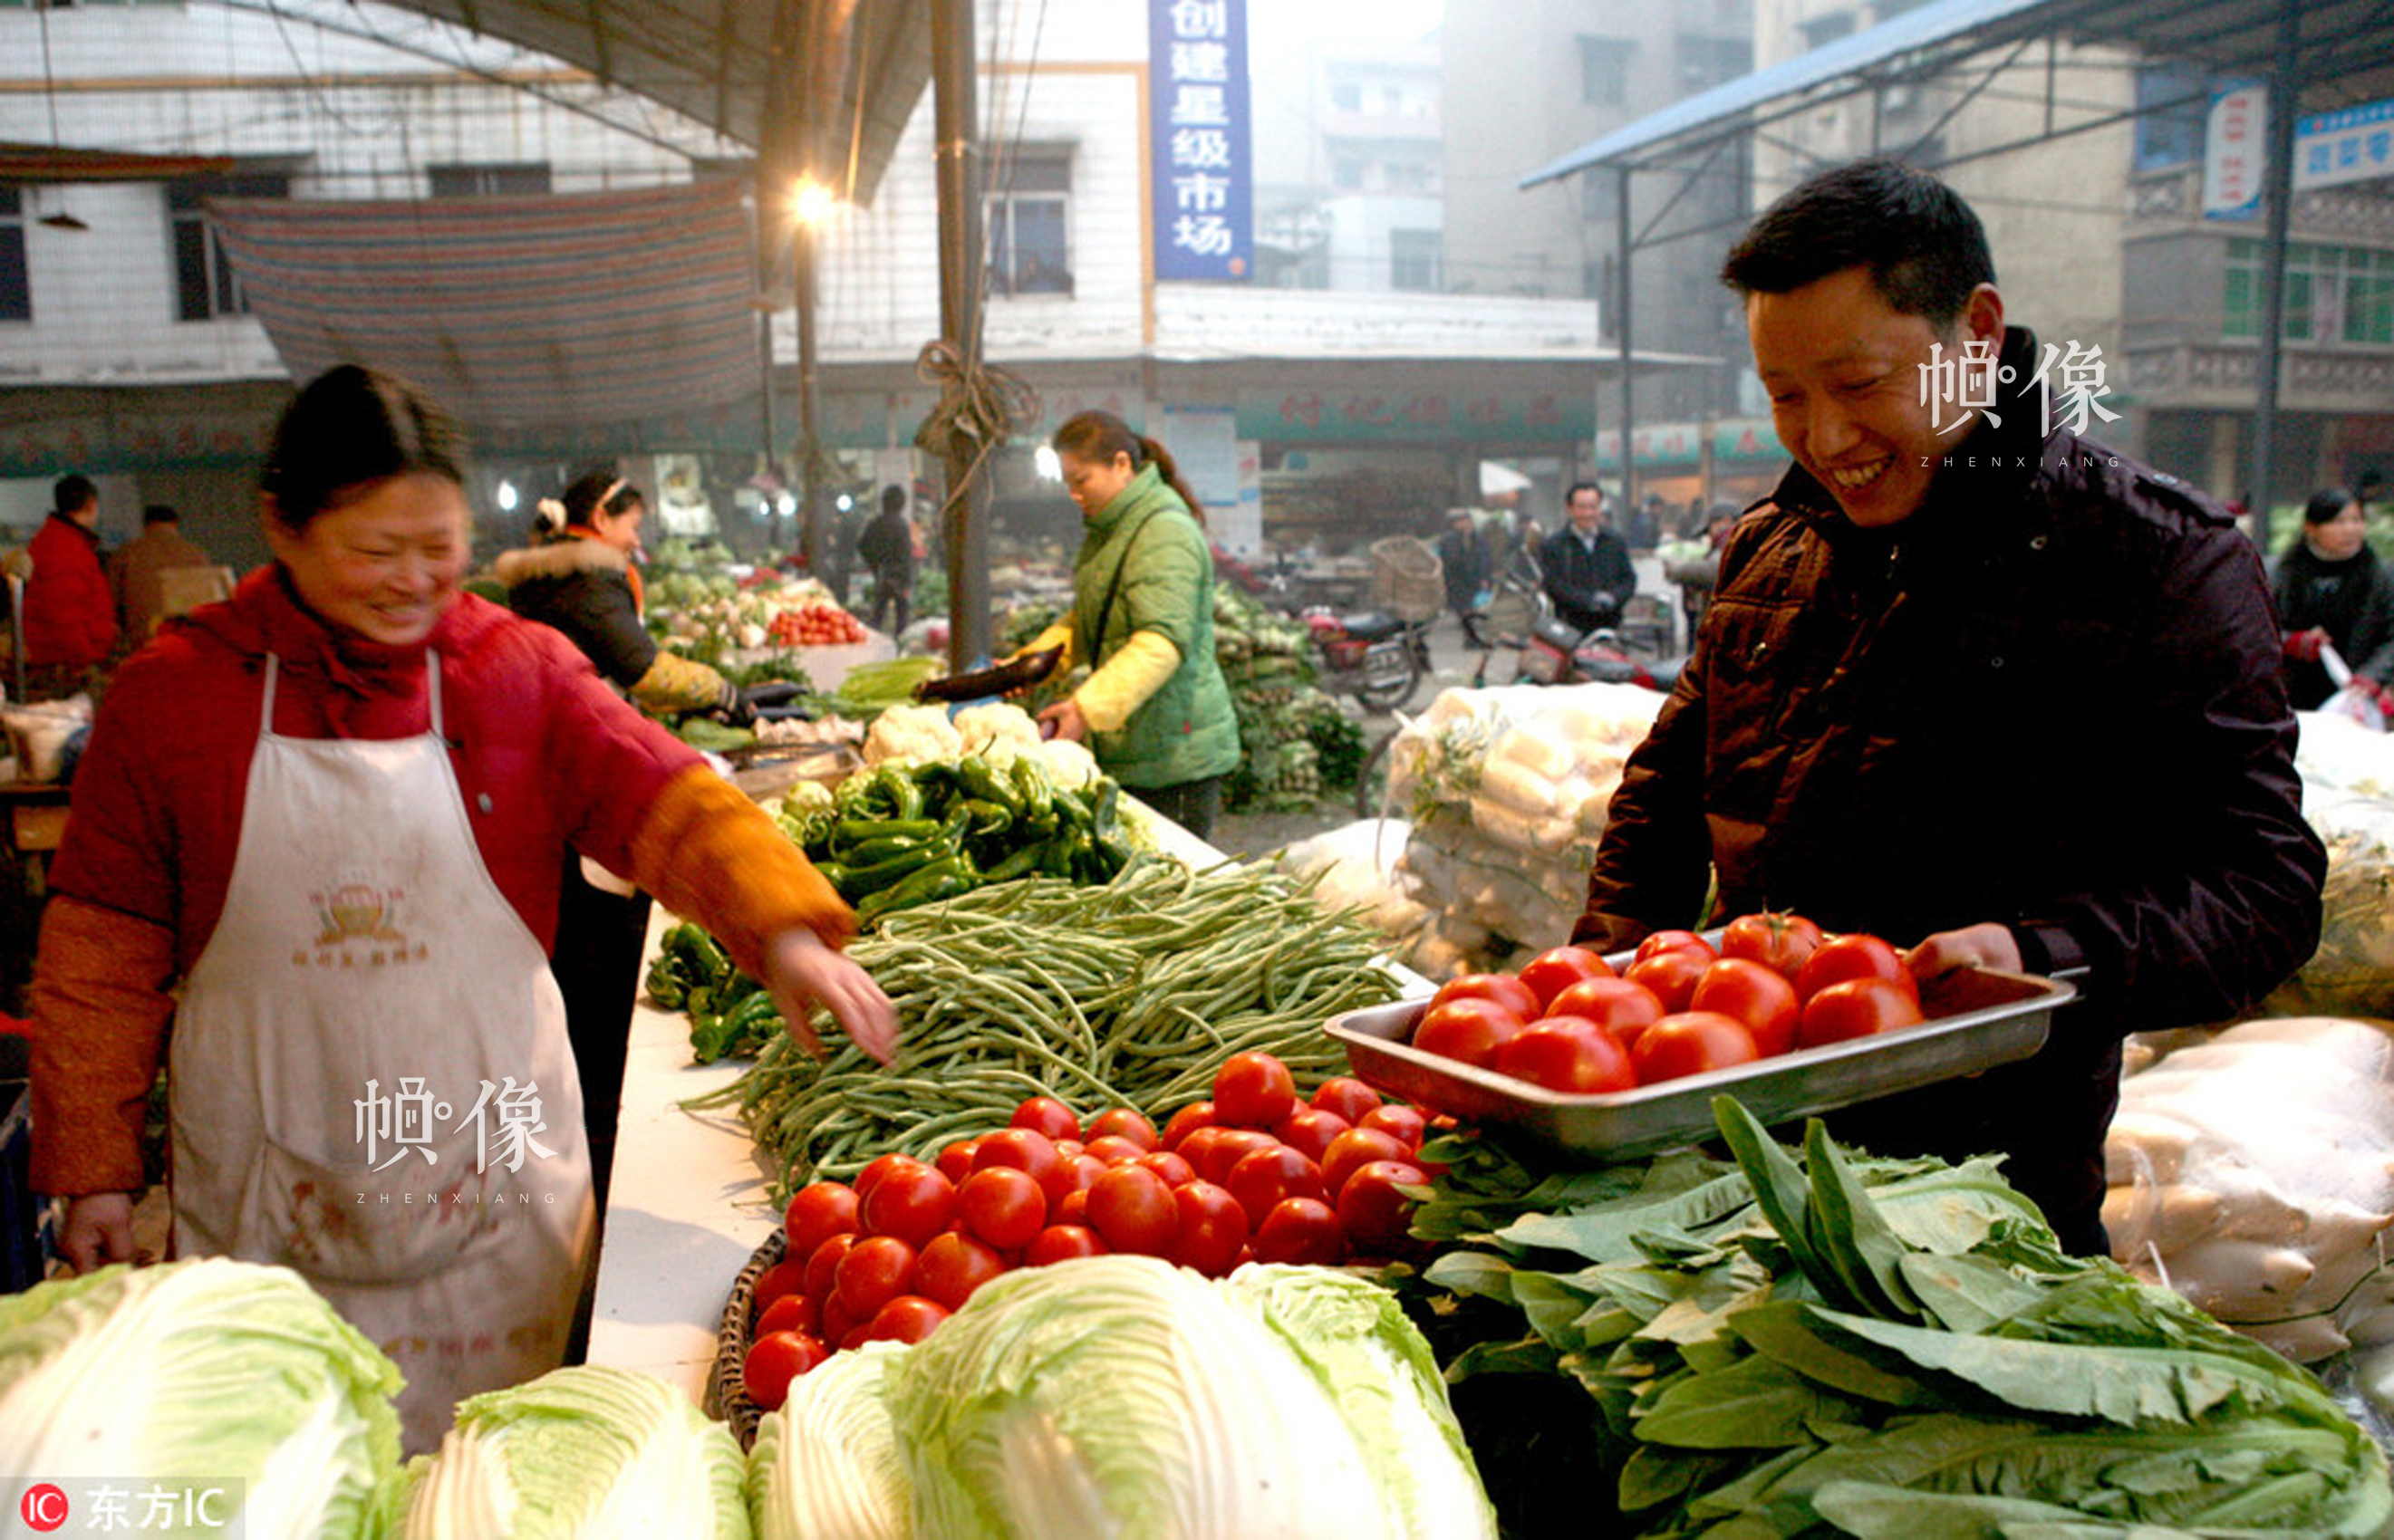 第32期:国人买菜方式变革:从逛菜市场到送菜进家 _中国网